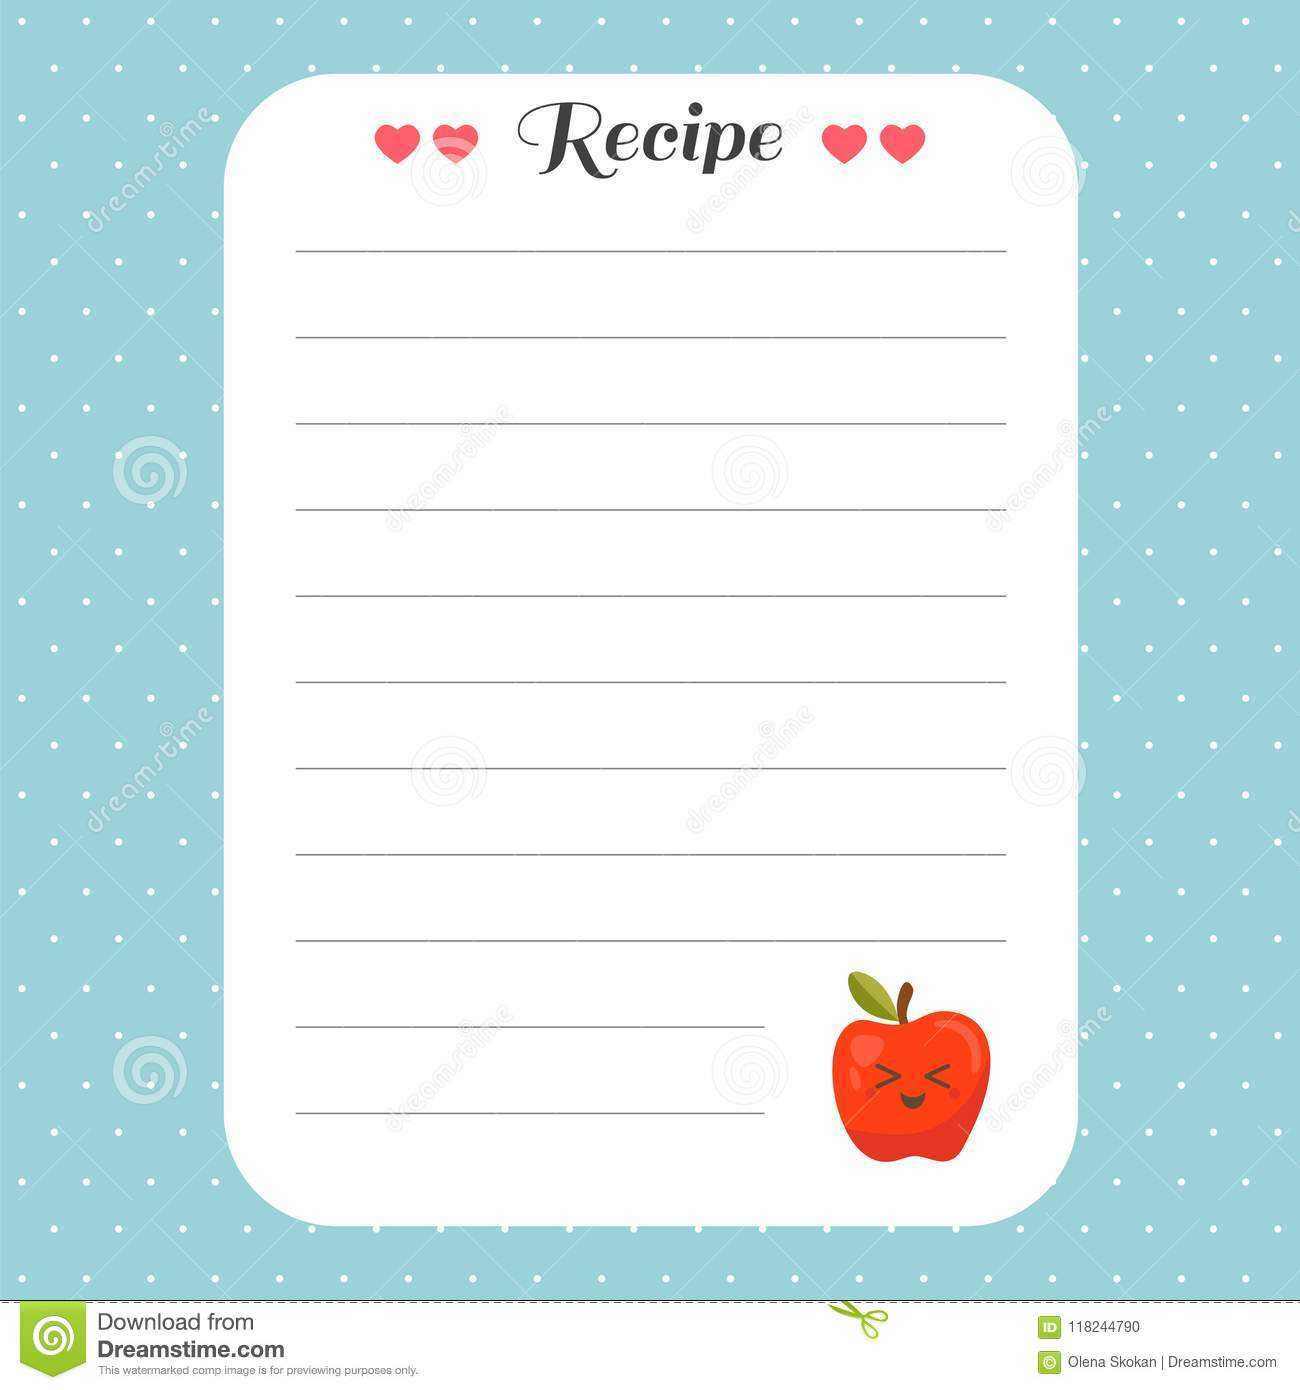 Cookbook Template Page. Recipe Card Template. For Restaurant Intended For Restaurant Recipe Card Template